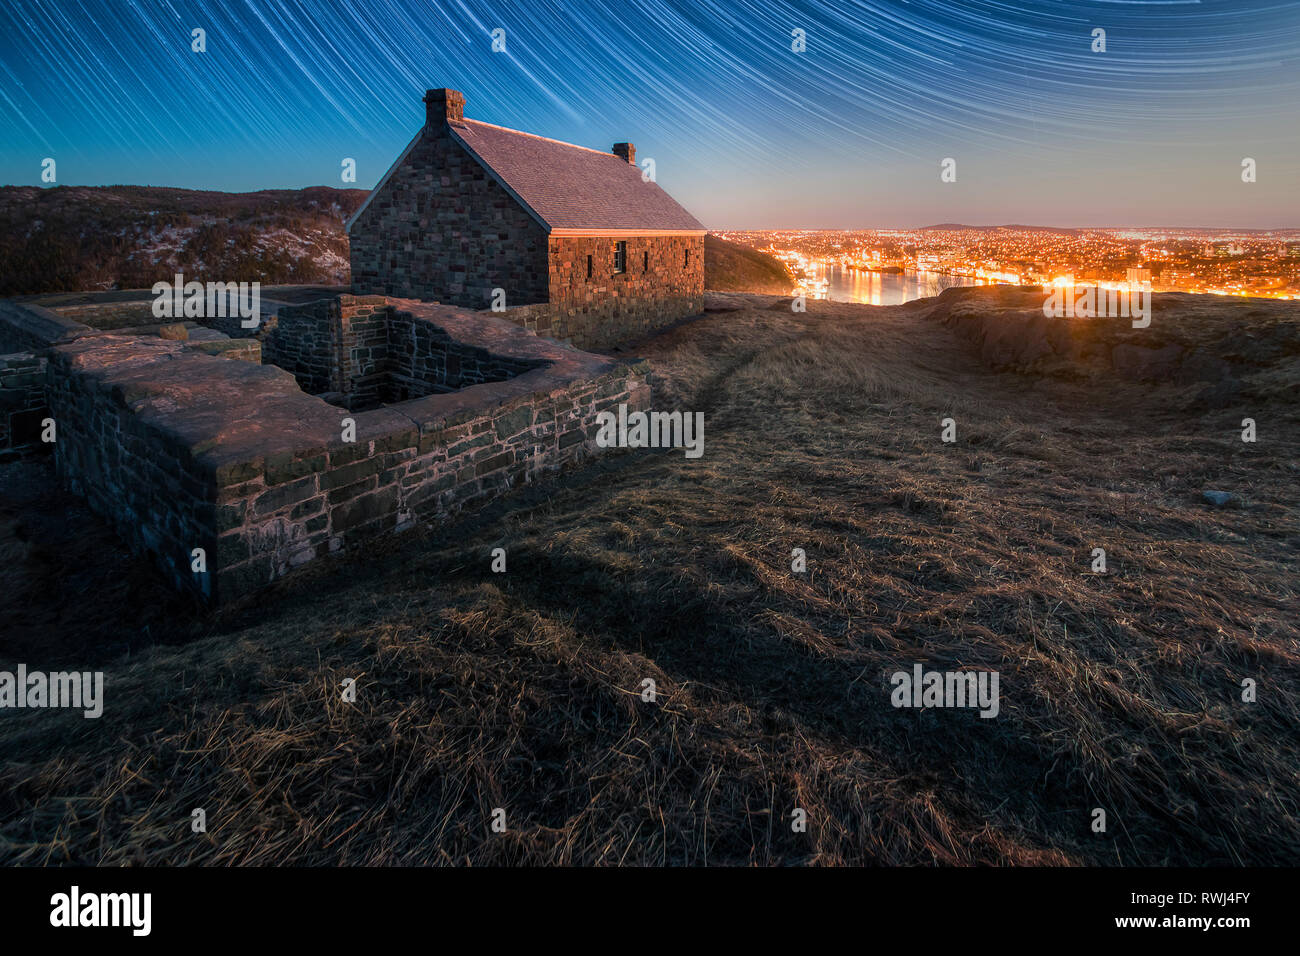 Vue du ciel la nuit et les lumières de la ville de Saint John's à partir de la batterie de Queens, le lieu historique national de Signal Hill, St John's, Terre-Neuve et Labrador Banque D'Images